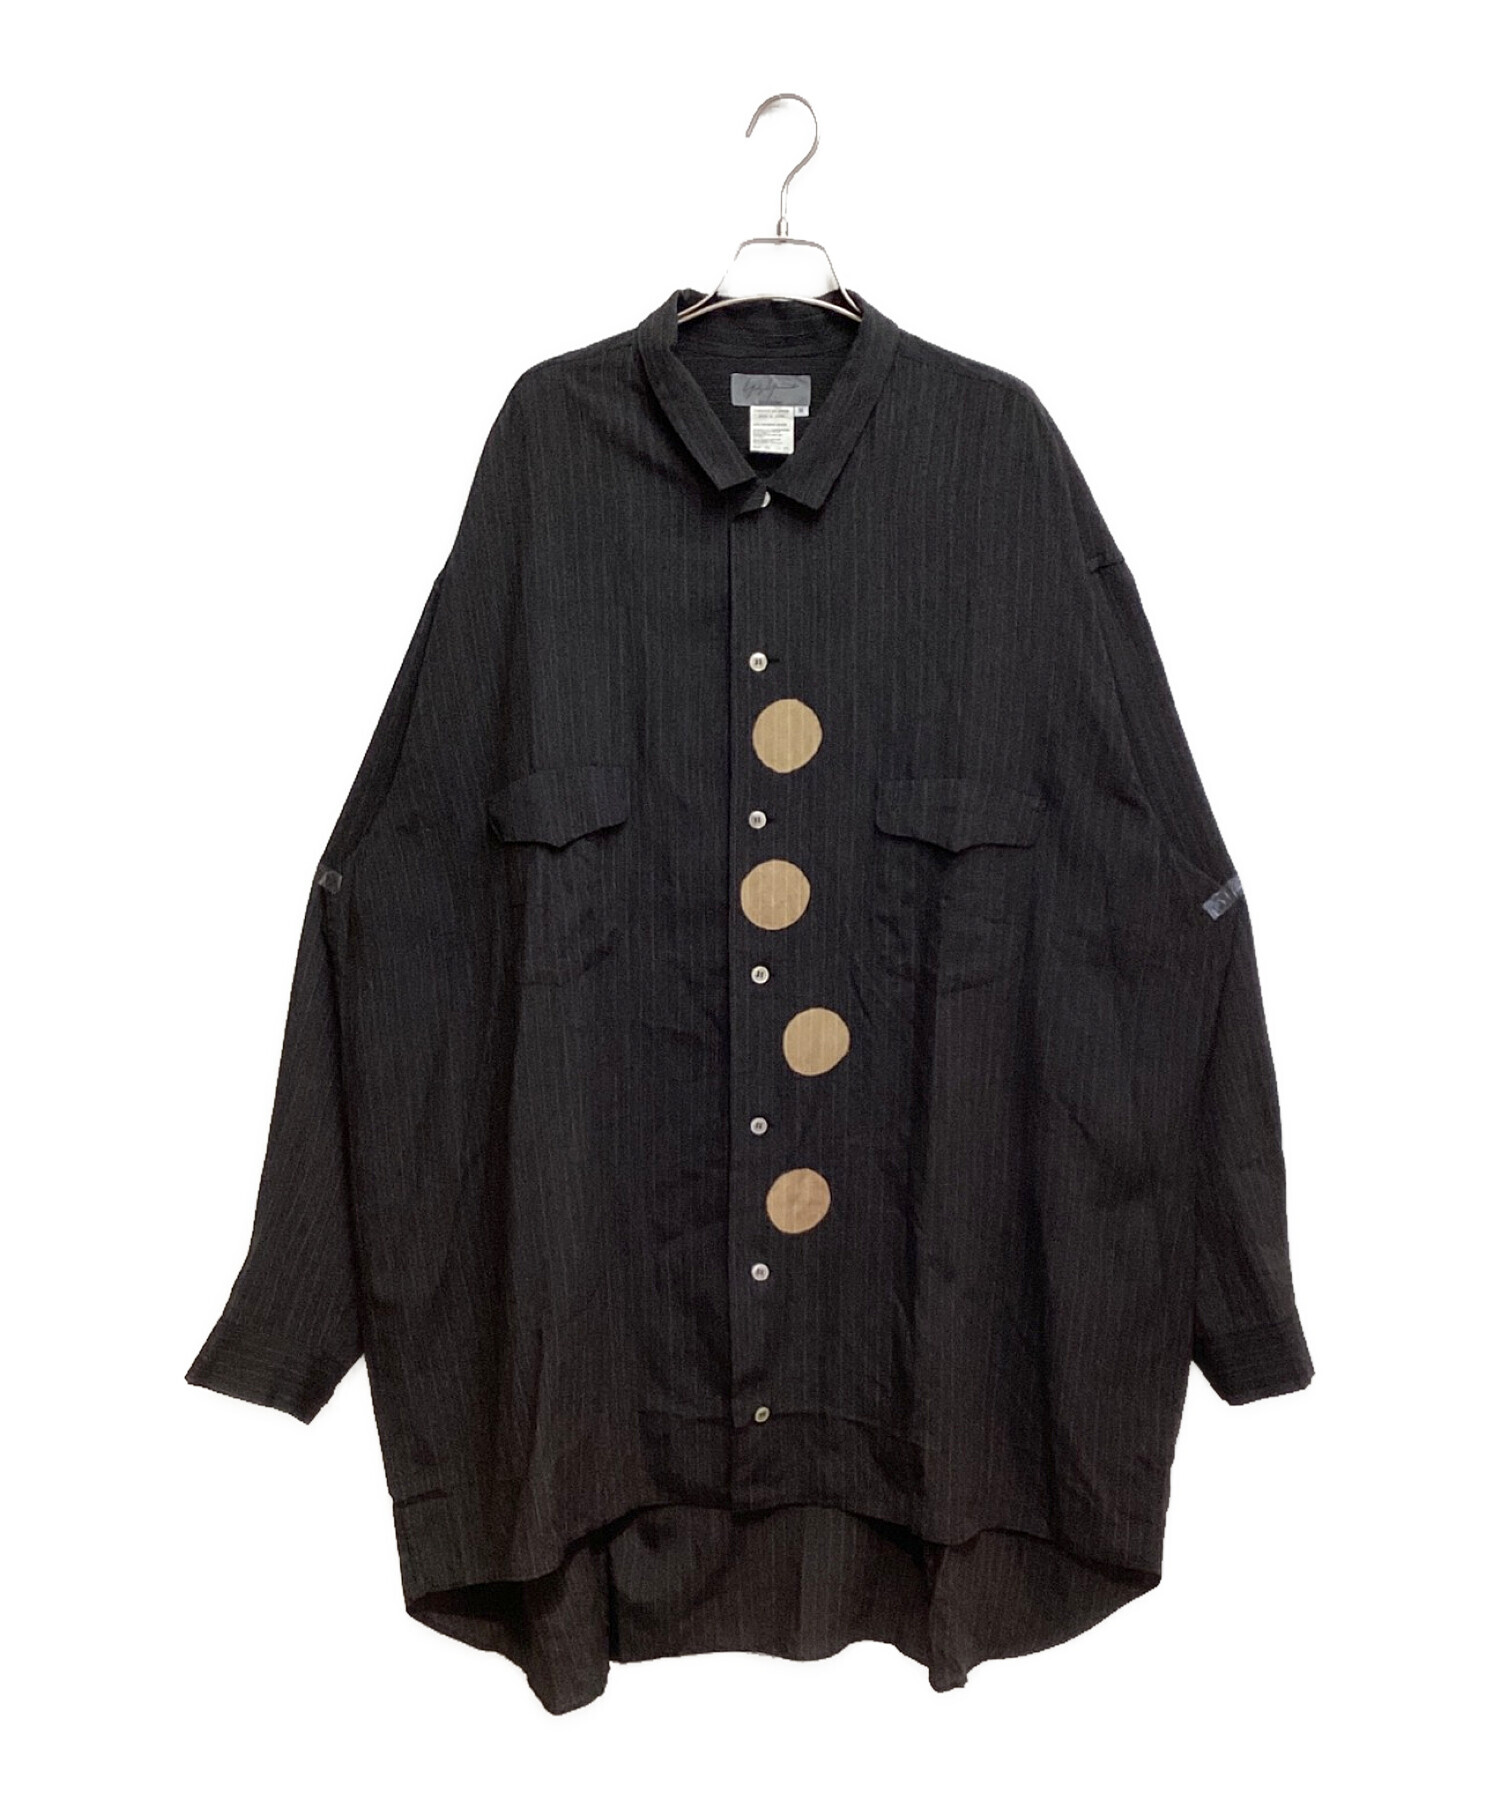 Yohji Yamamoto pour homme (ヨウジヤマモト プールオム) 96AW 脱色期 ドットデザインレーヨンシャツ ブラック サイズ:M